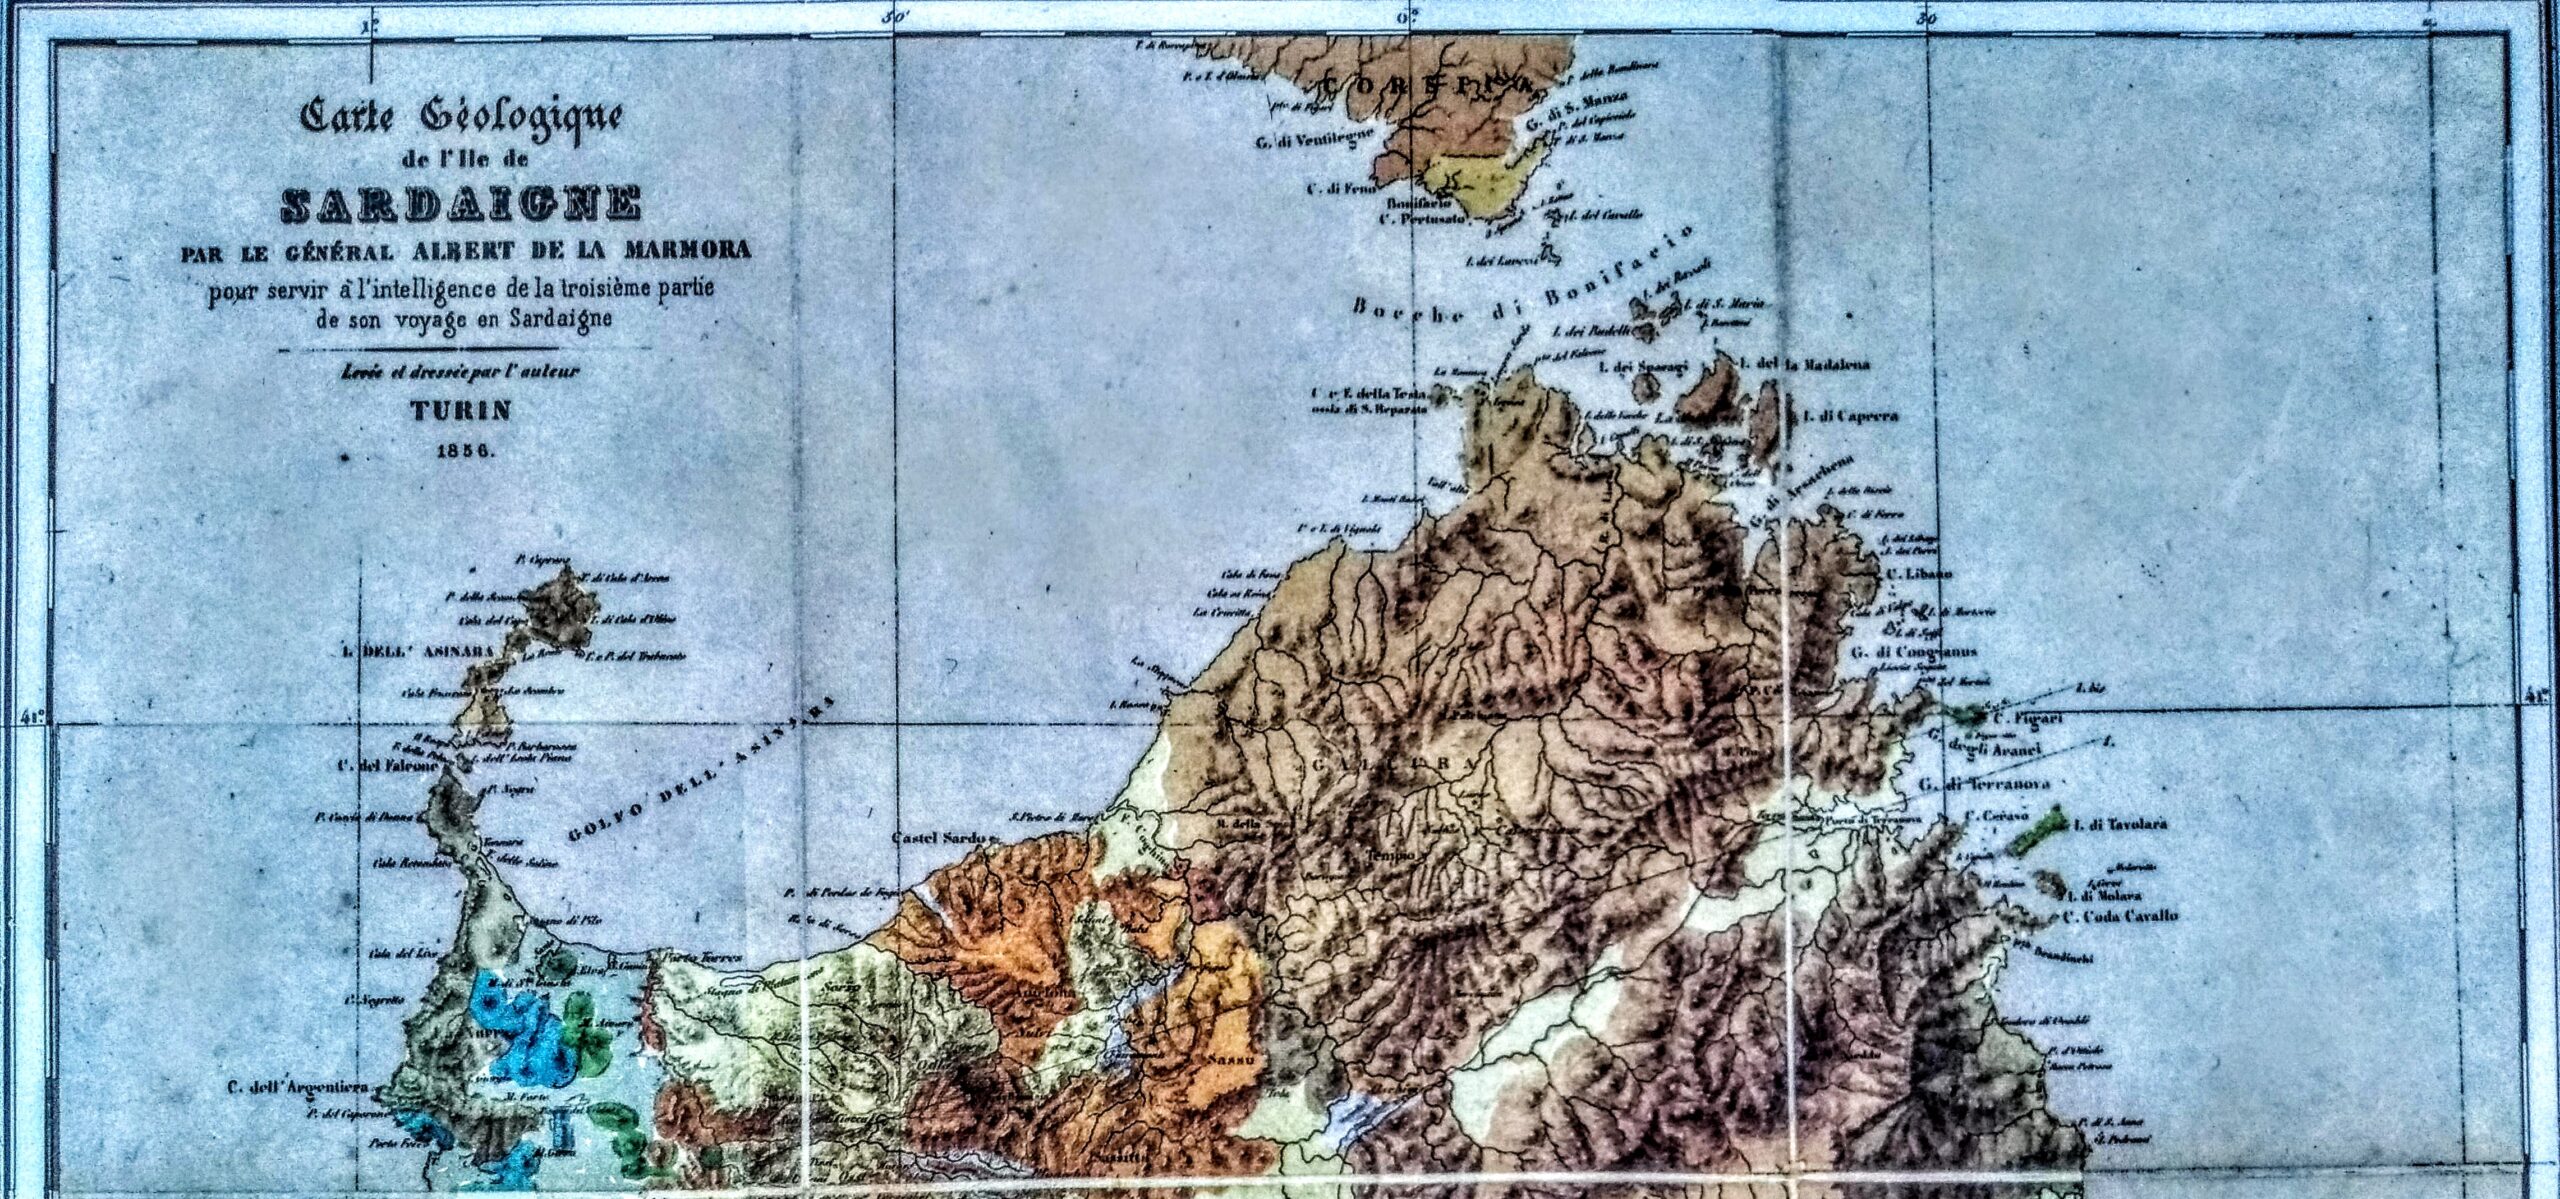 1856 - La Marmora, prima carta geologica della Sardegna